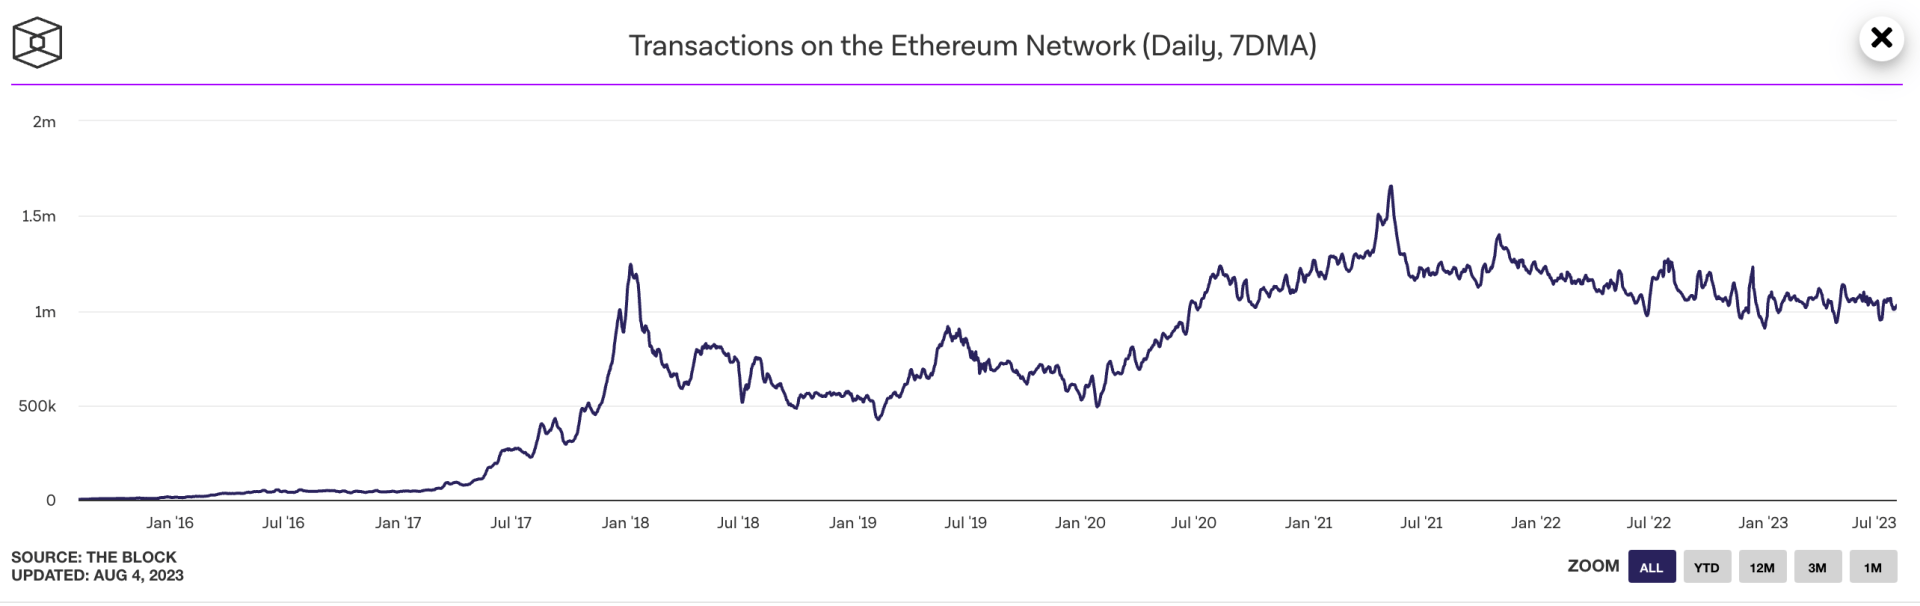 Le nombre de transactions sur le réseau Ethereum semble se stabiliser, et il pourrait repartir à la hausse dans les mois à venir - 4 août 2023. 